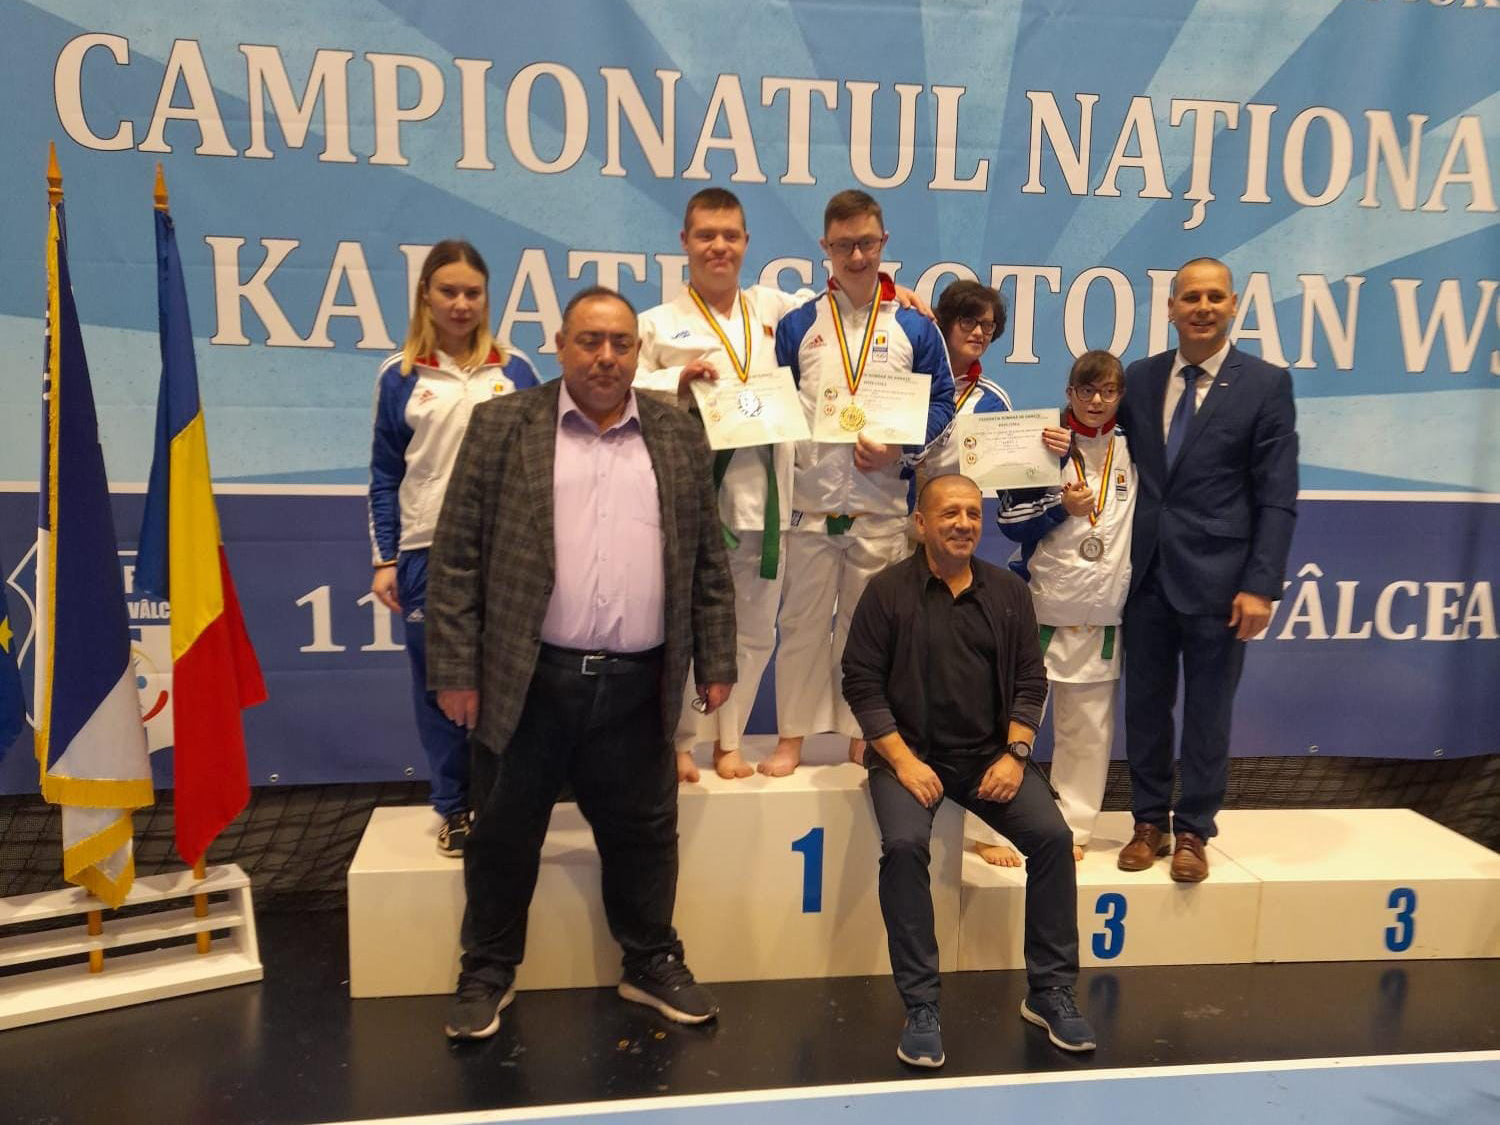 Salba de medalii pentru sportivii de la CS Chimia si ACS Sen Sport la Campionatul Național de Karate Shotokan WSF.